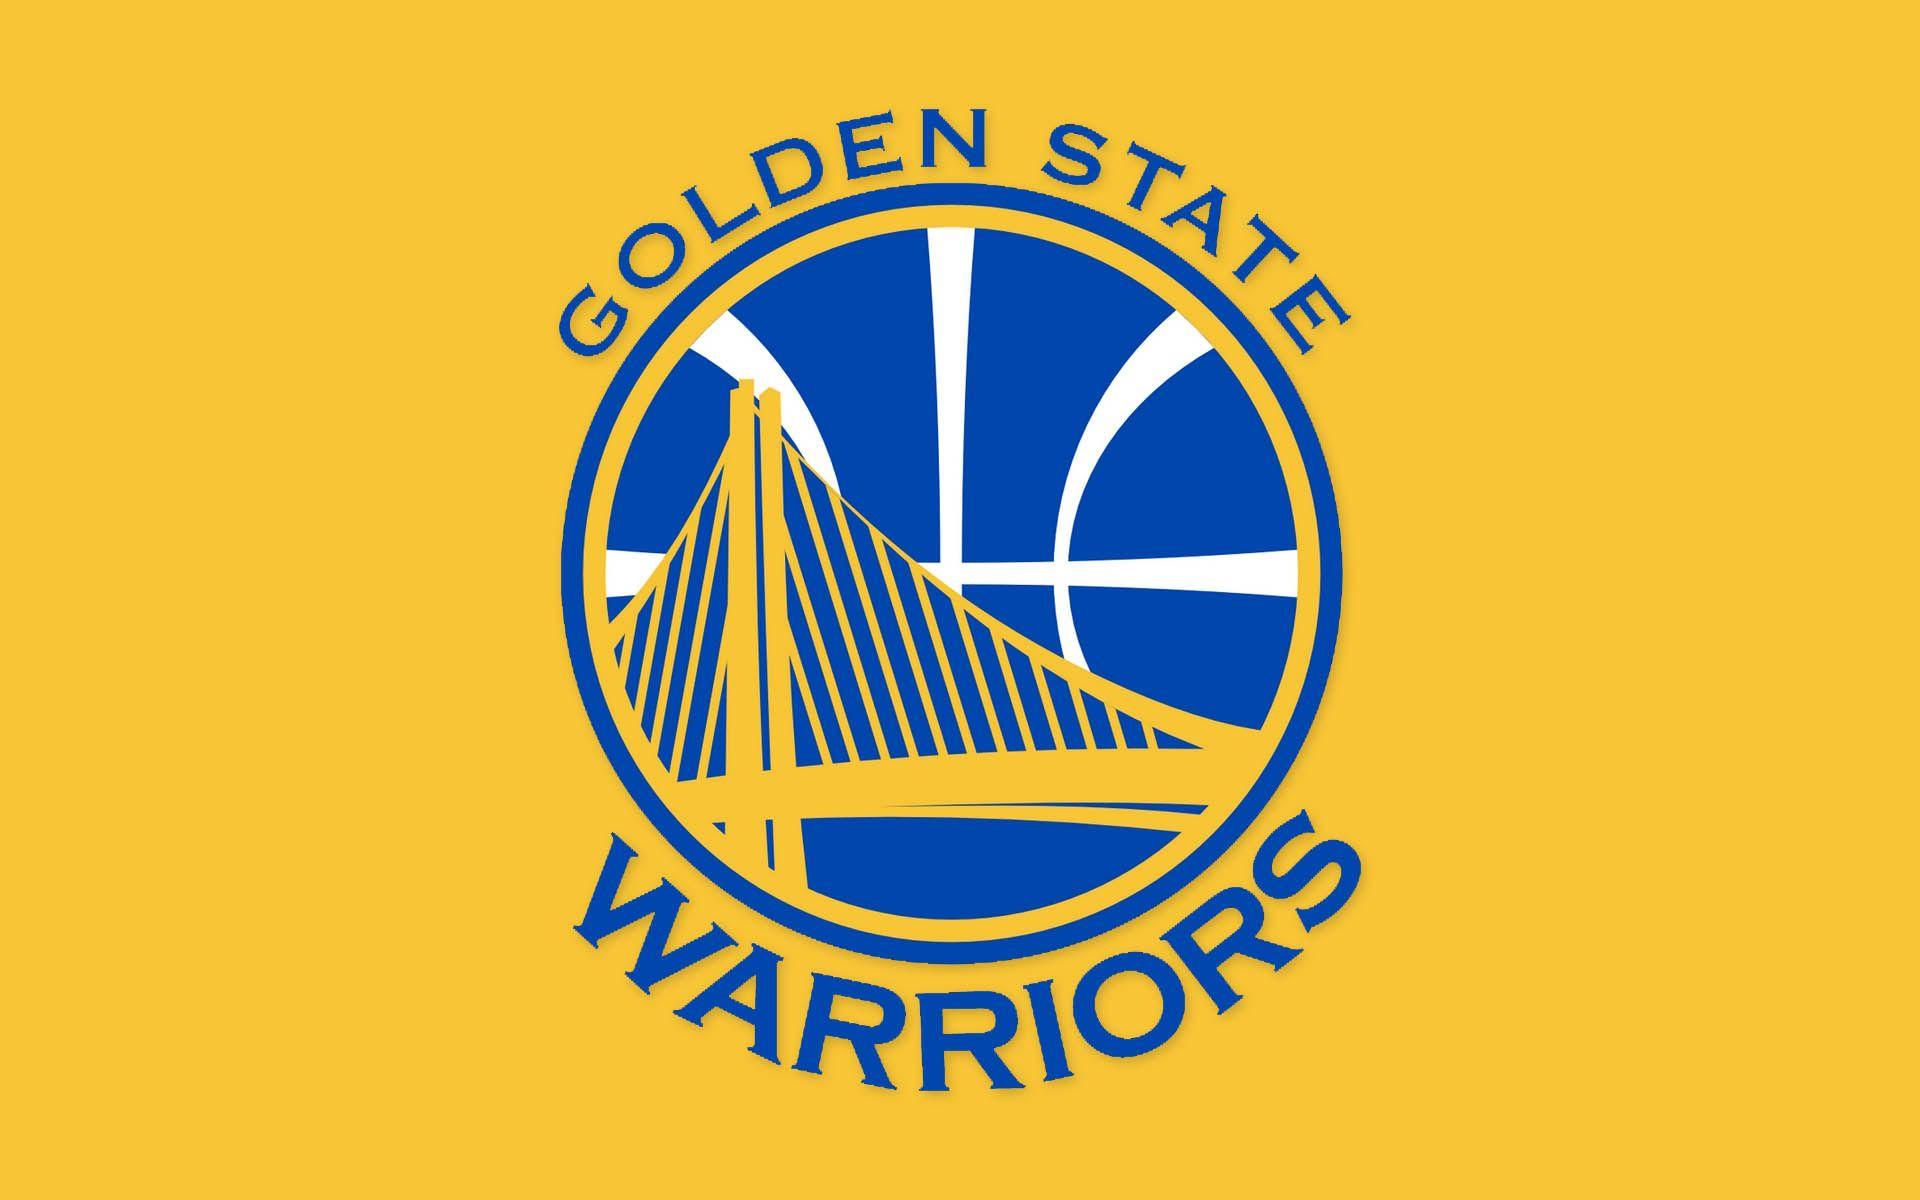 HD Golden State Warriors Wallpaper